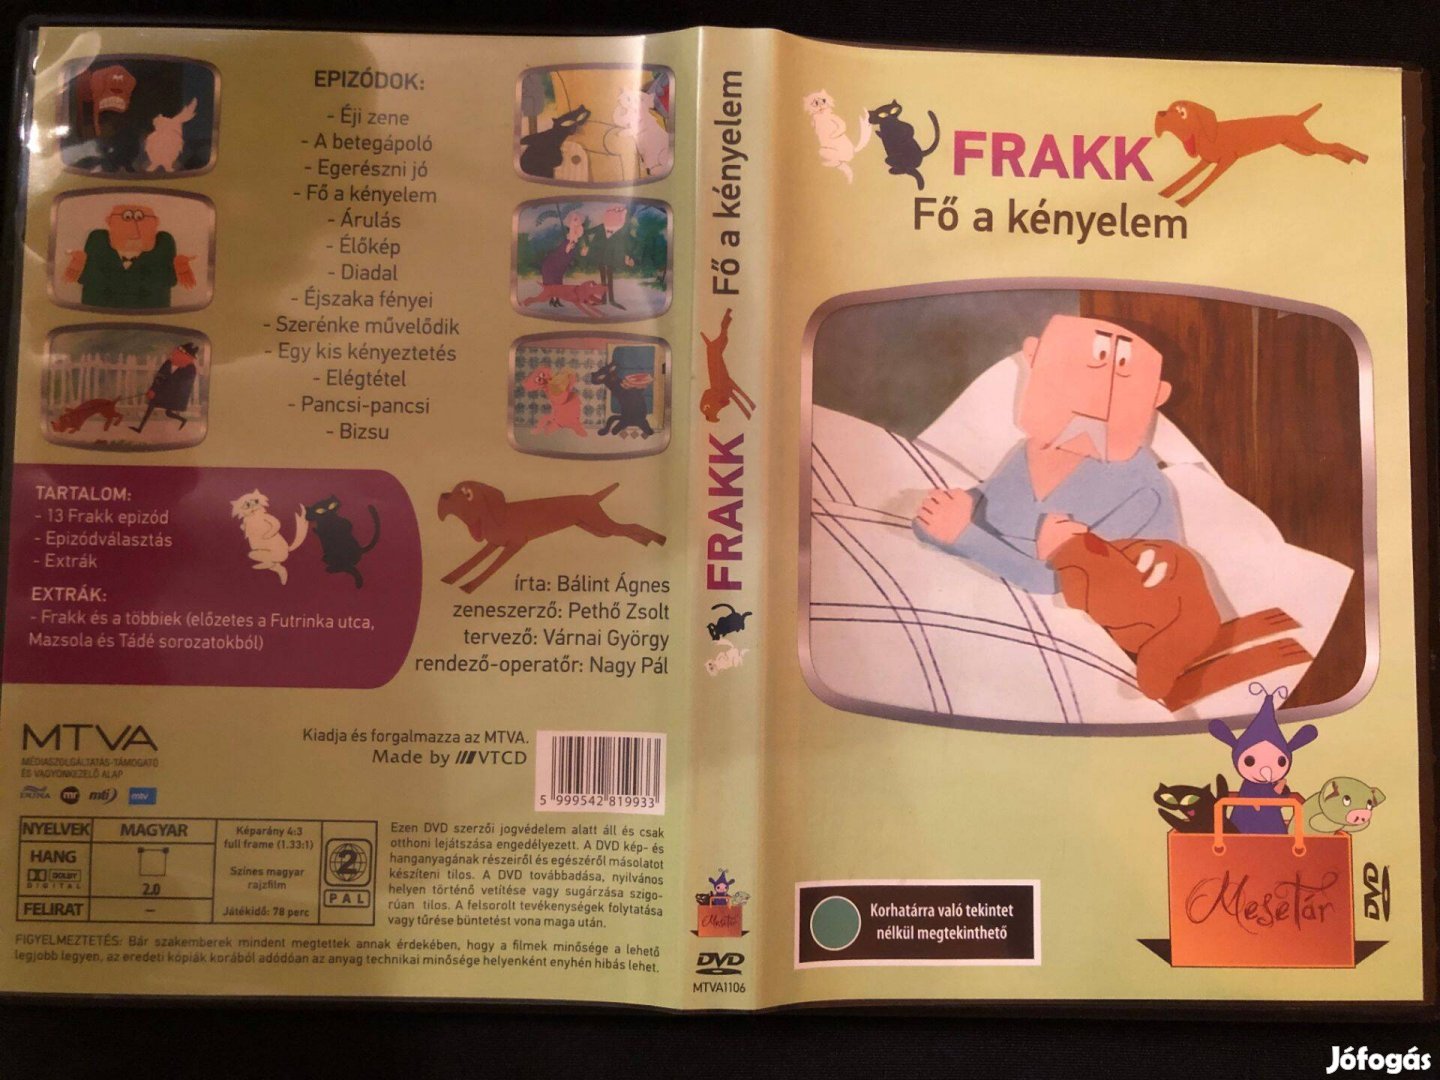 Frakk - Fő a kényelem DVD (ritkaság, karcmentes)